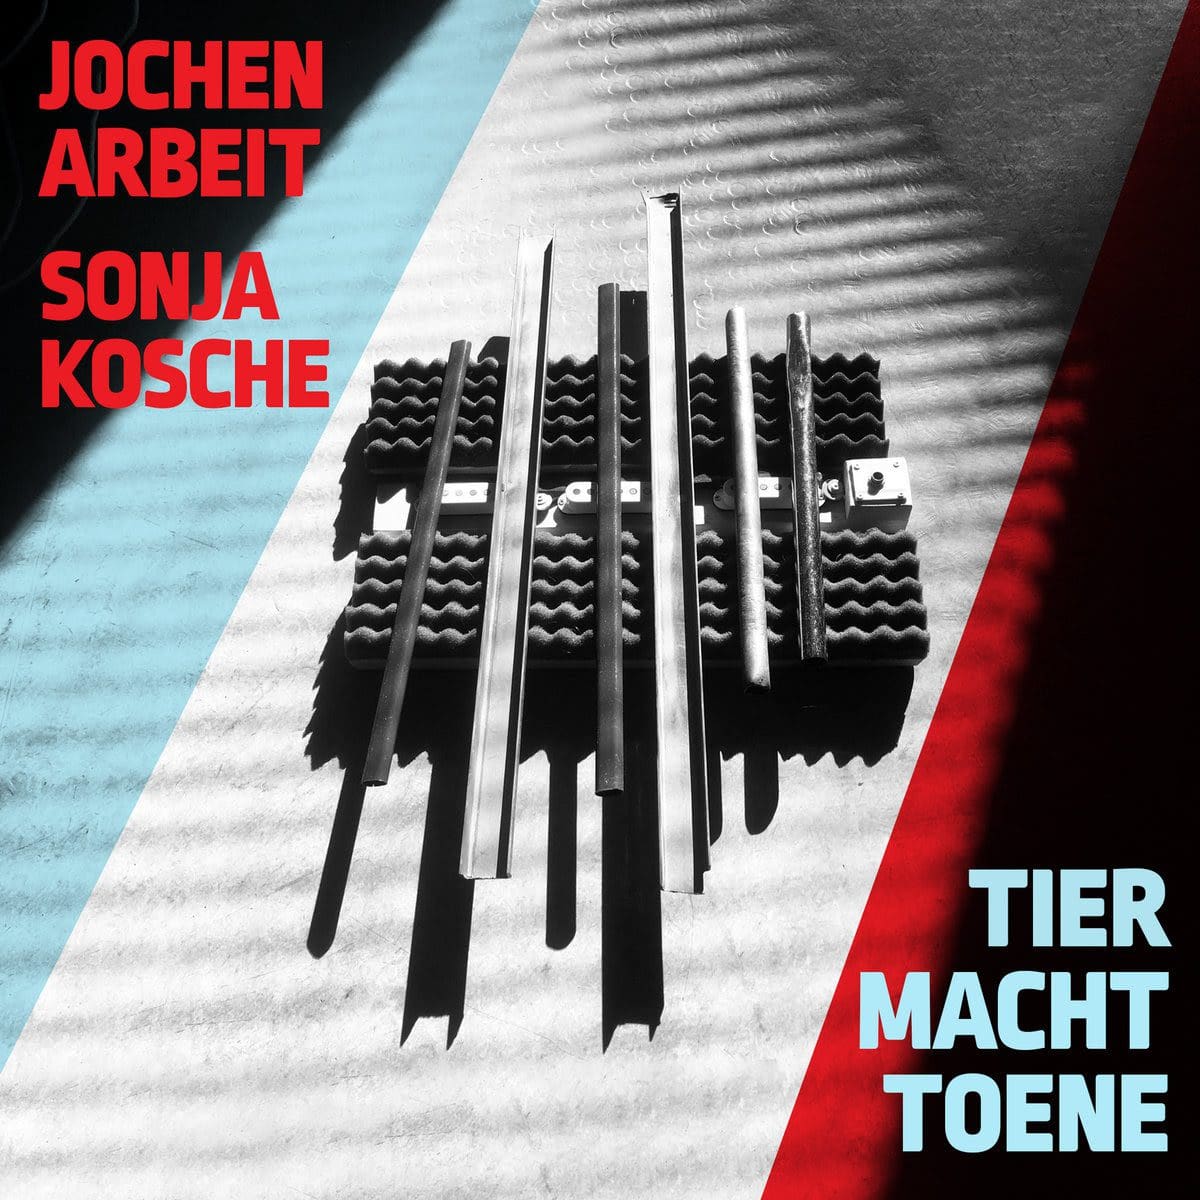 Exclusive Full Album Stream of the Forthcoming Album by Einstürzende Neubauten Guitarist Jochen Arbeit